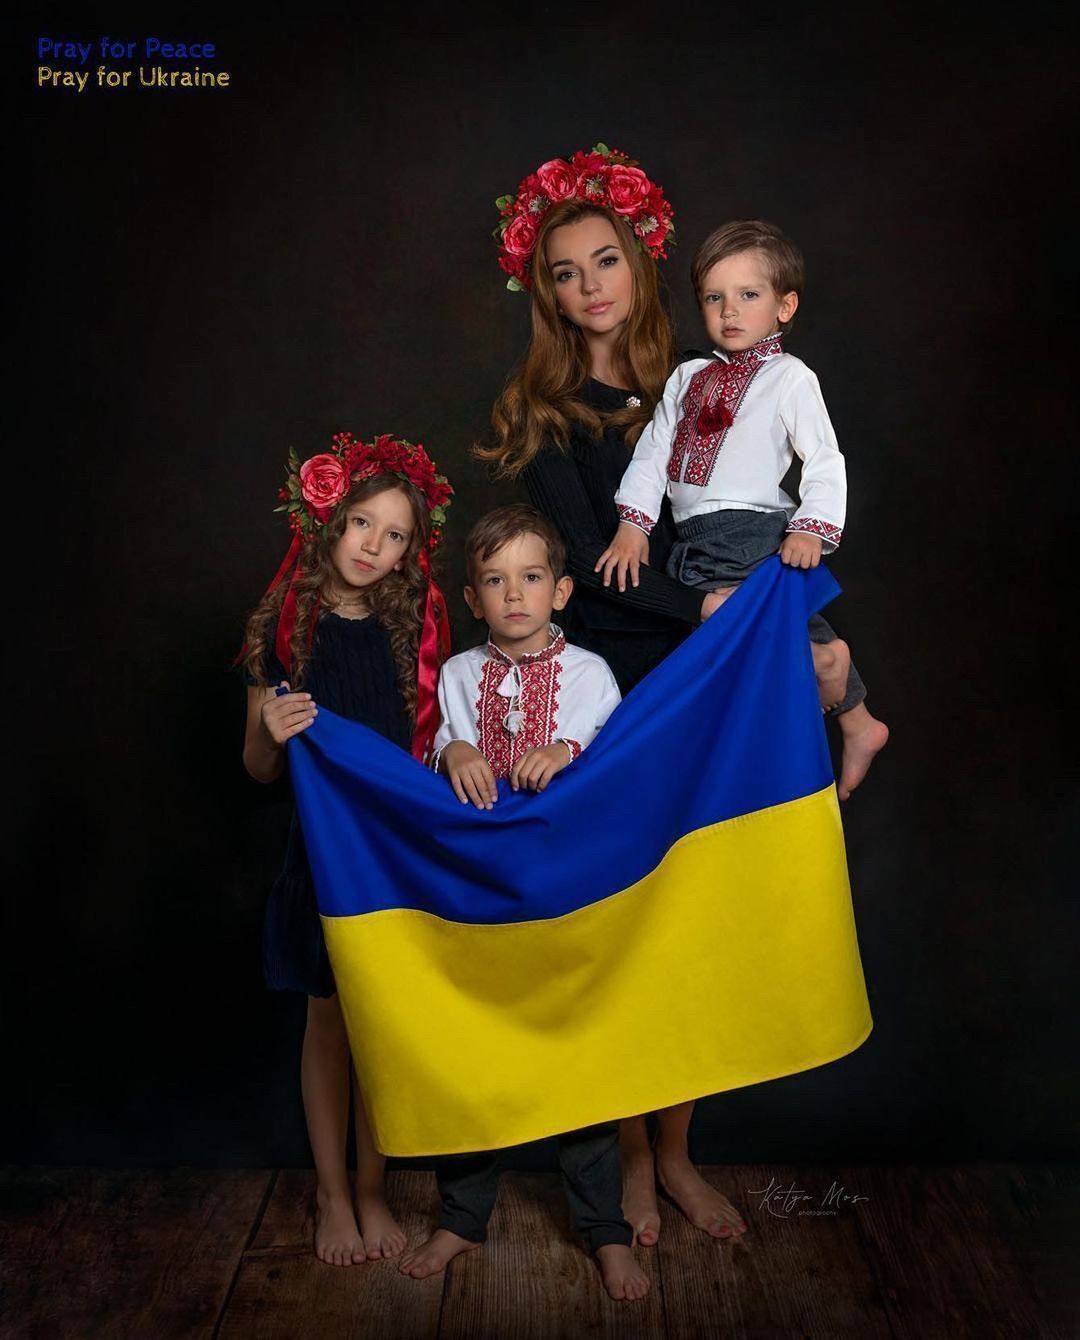 Стаховський розлучився із дружиною-росіянкою через рішення воювати за Україну. У пари троє дітей